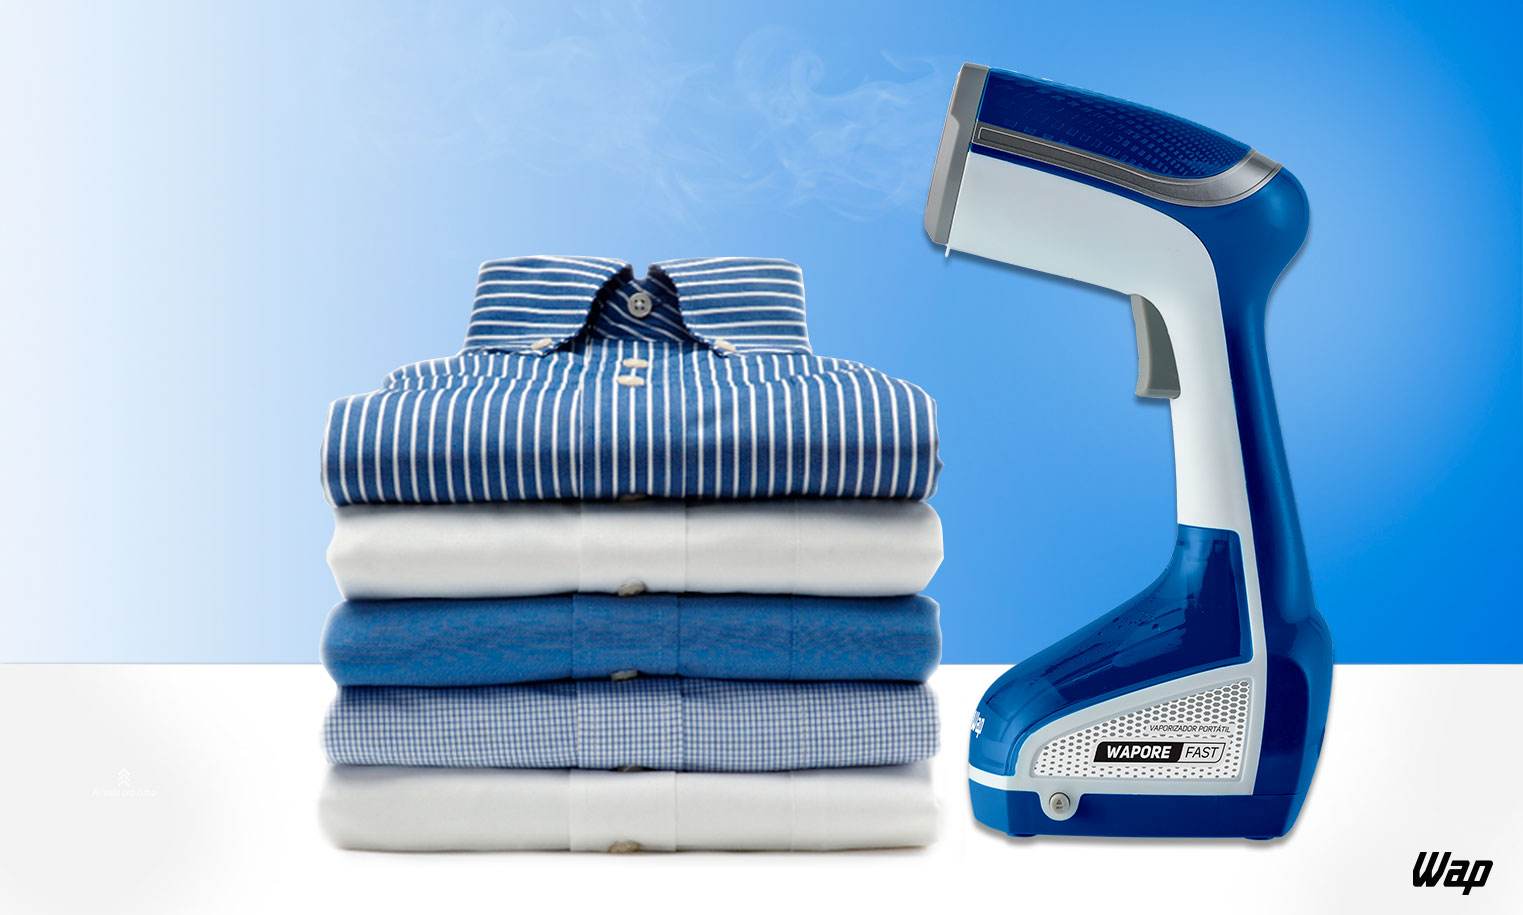 higienizador-vaporizador-portatil-wap-wapore-fast-higienizacao-de-roupas-e-tecidos